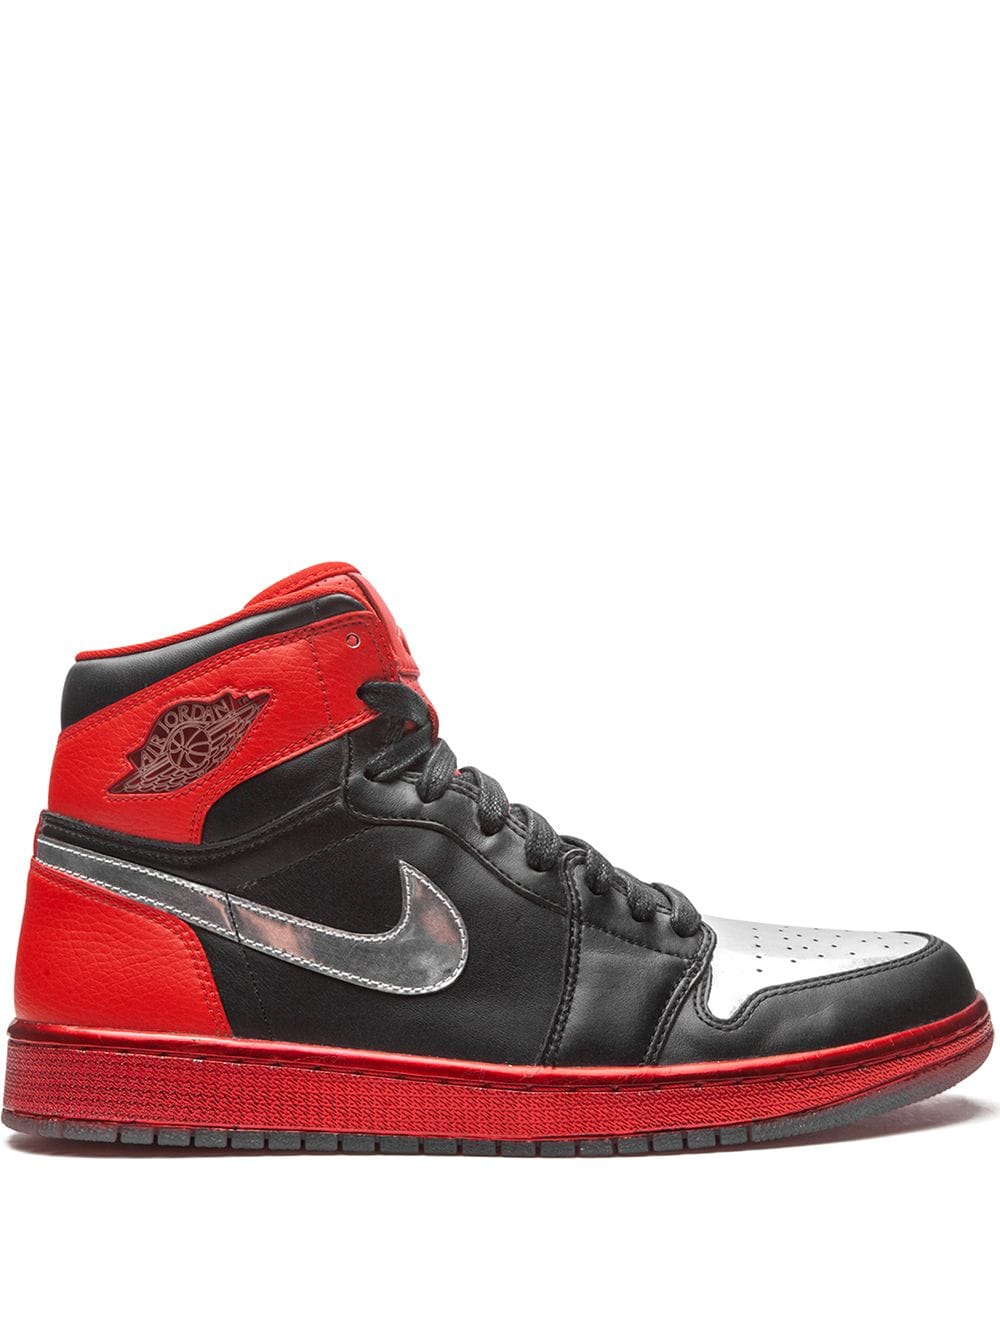 Jordan Air Jordan 1 Retro High "Legend of the Summer" sneakers - Black